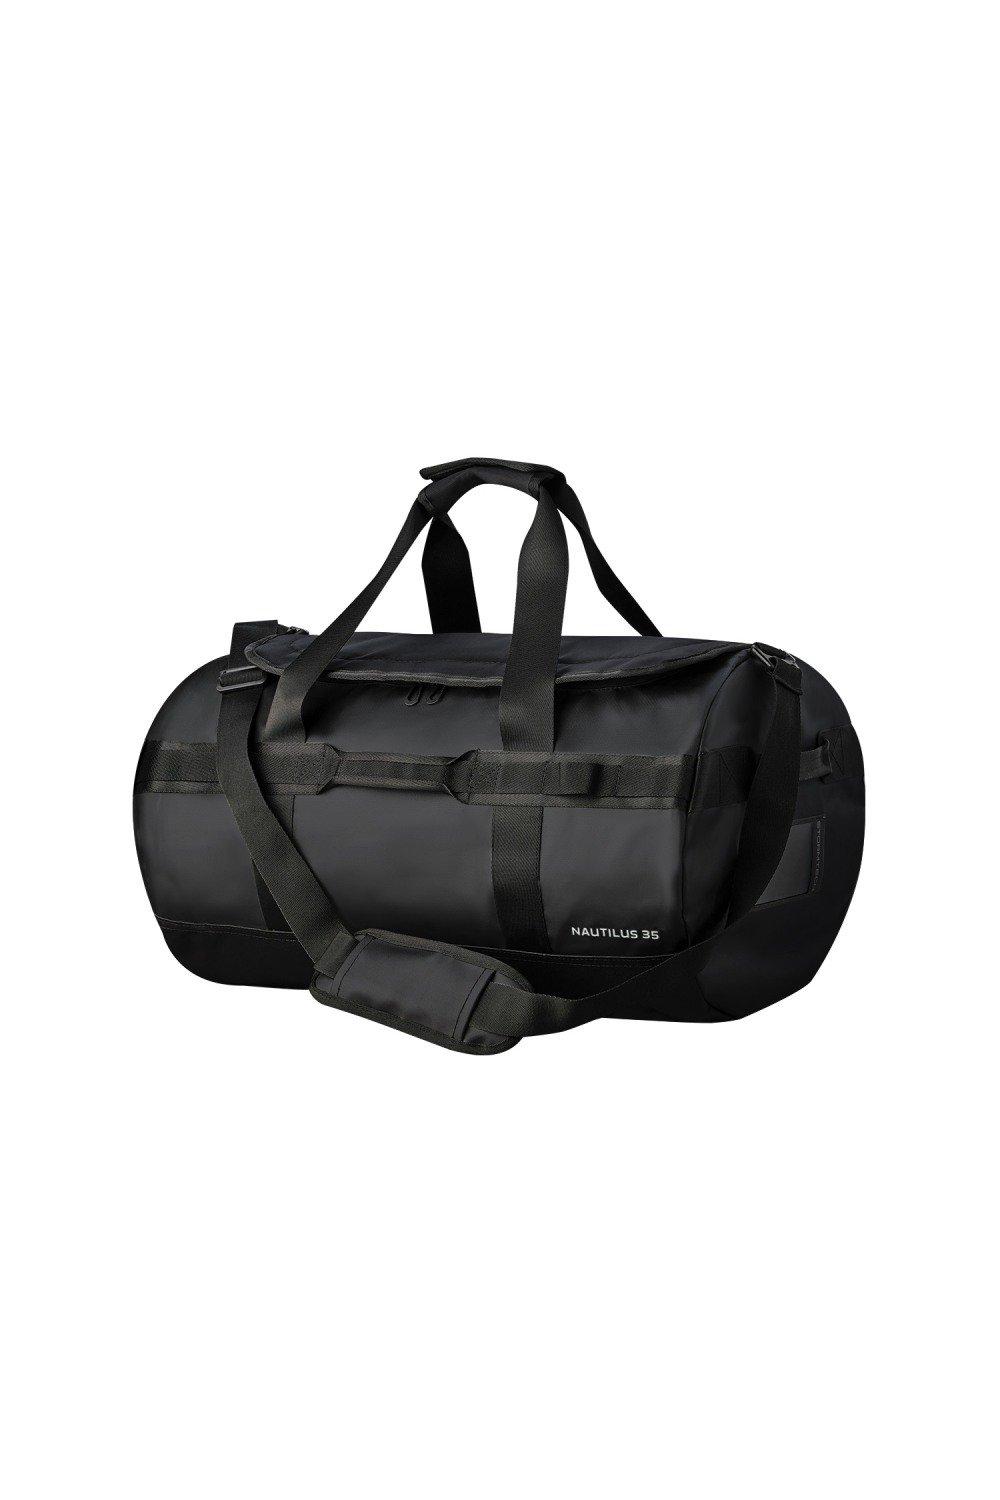 Nautilus Waterproof 35L Duffle Bag